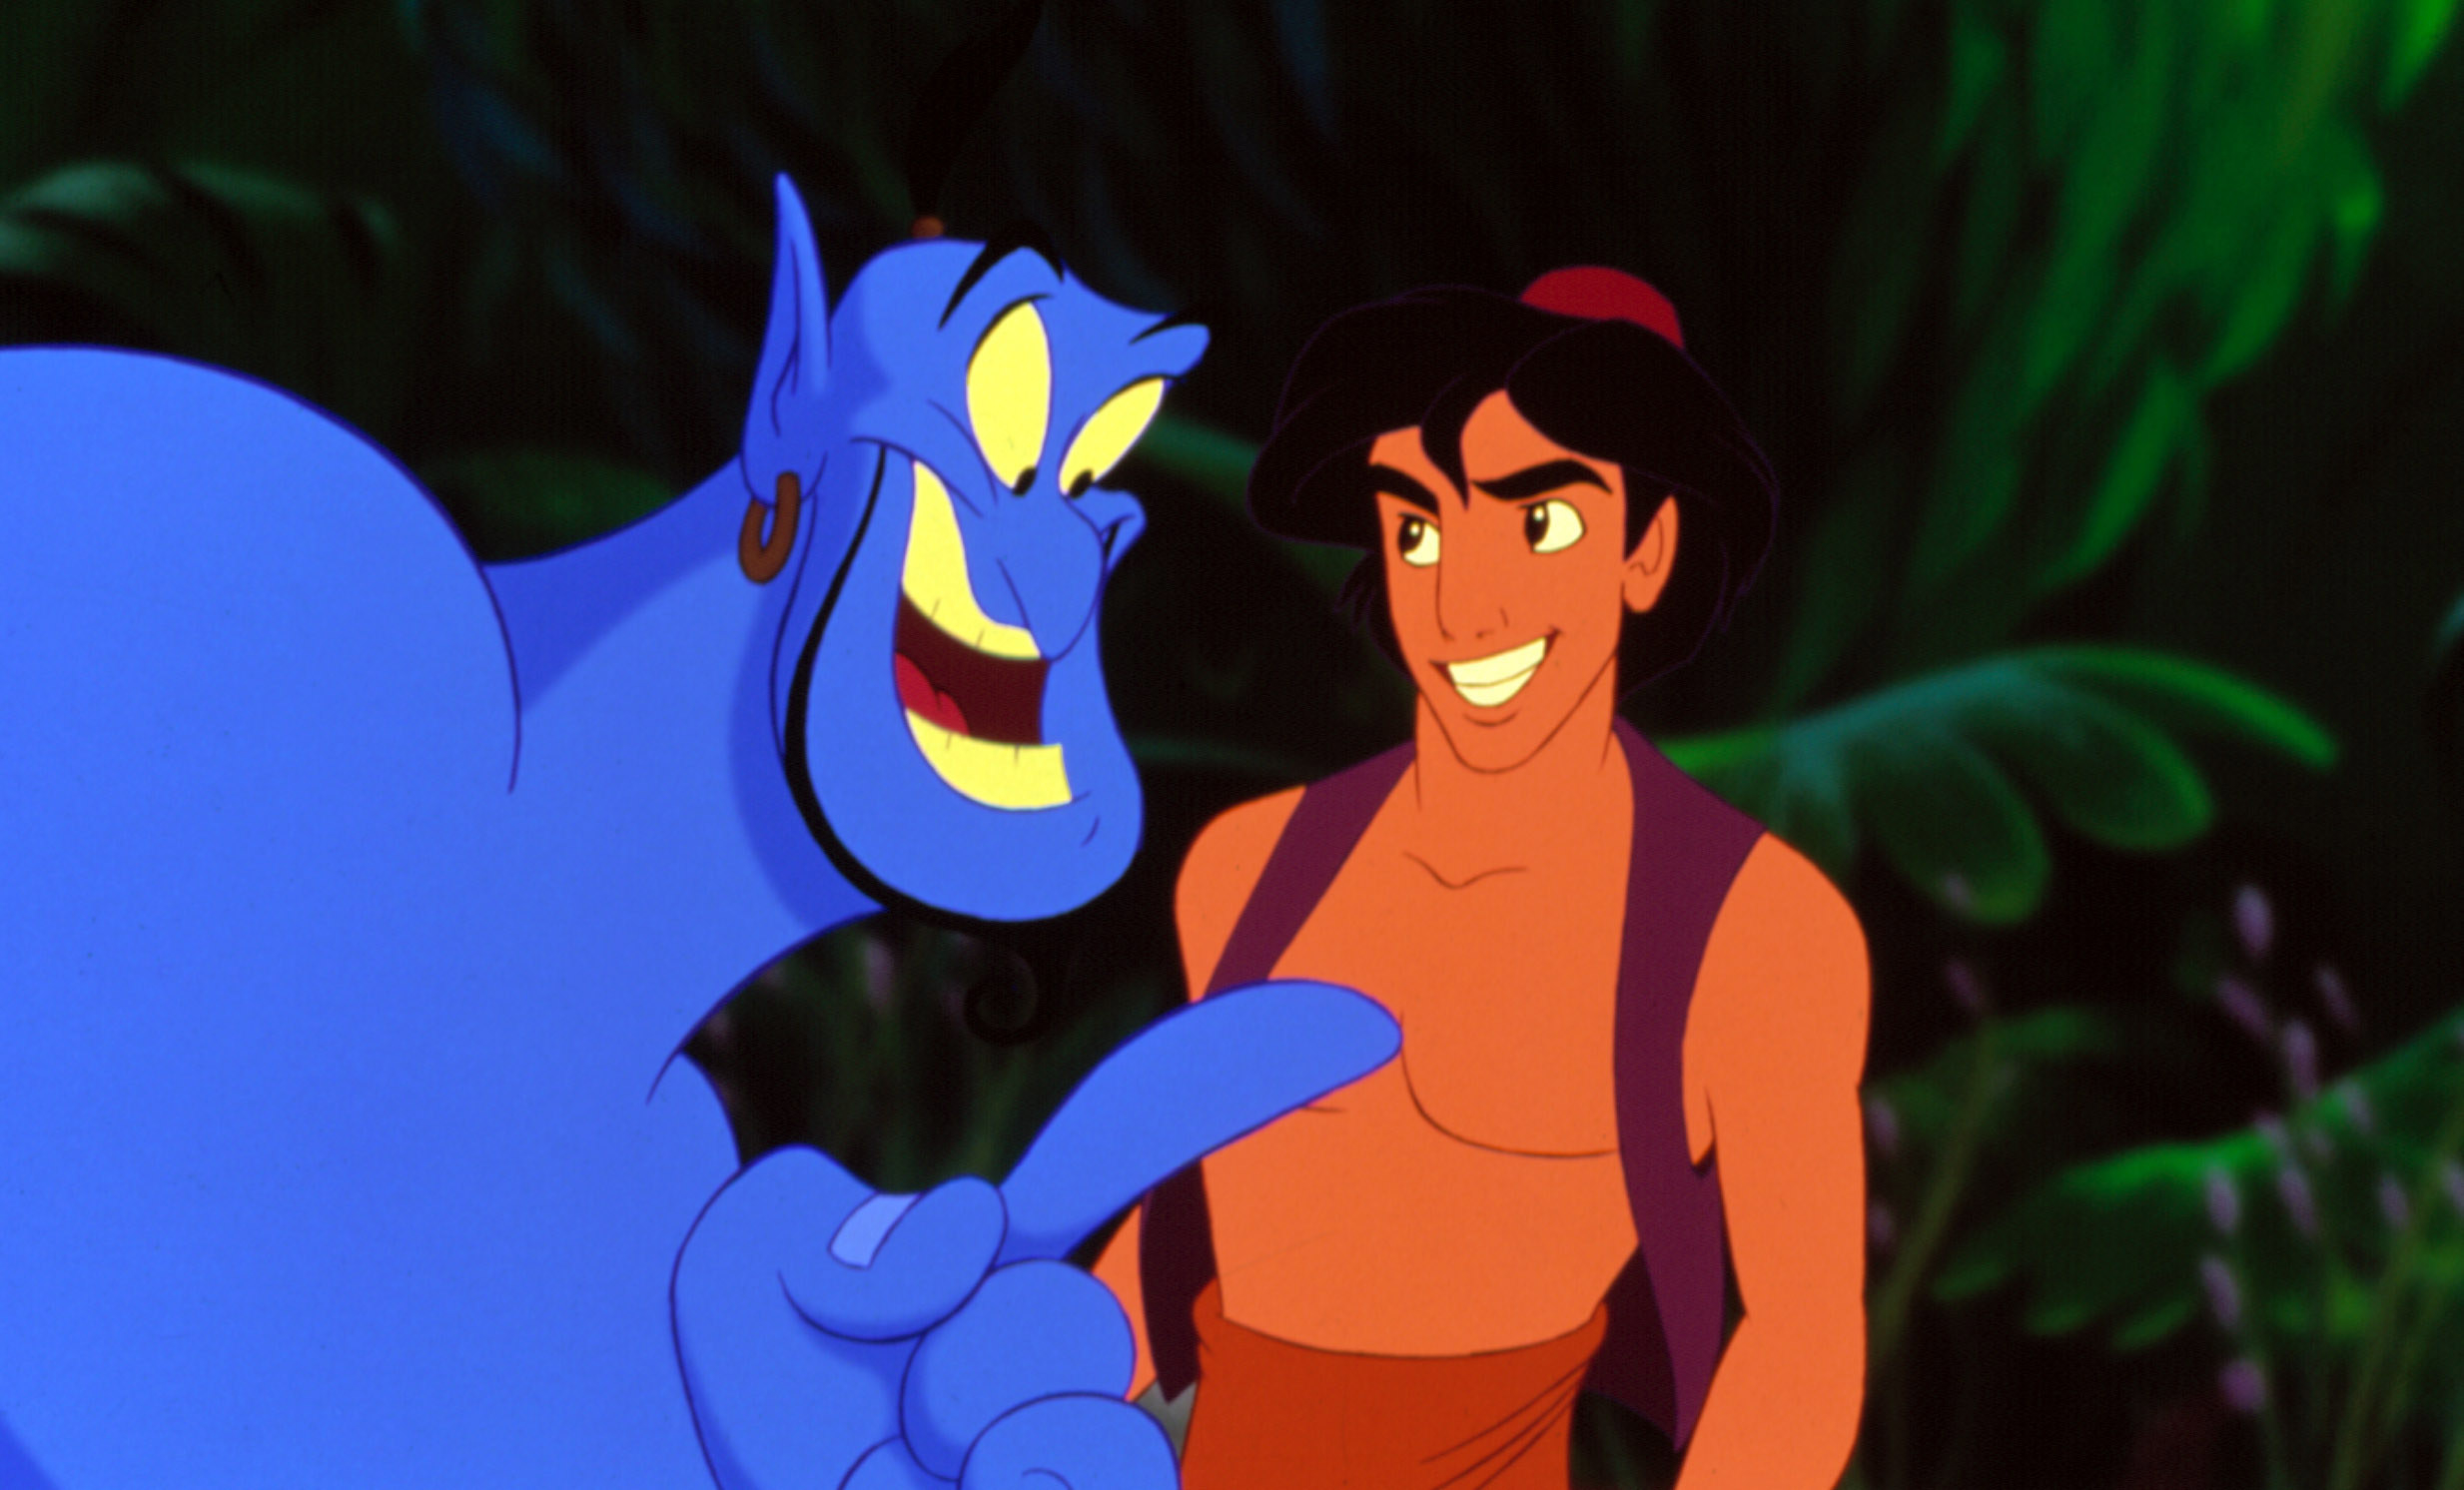 Aladdin with the Genie